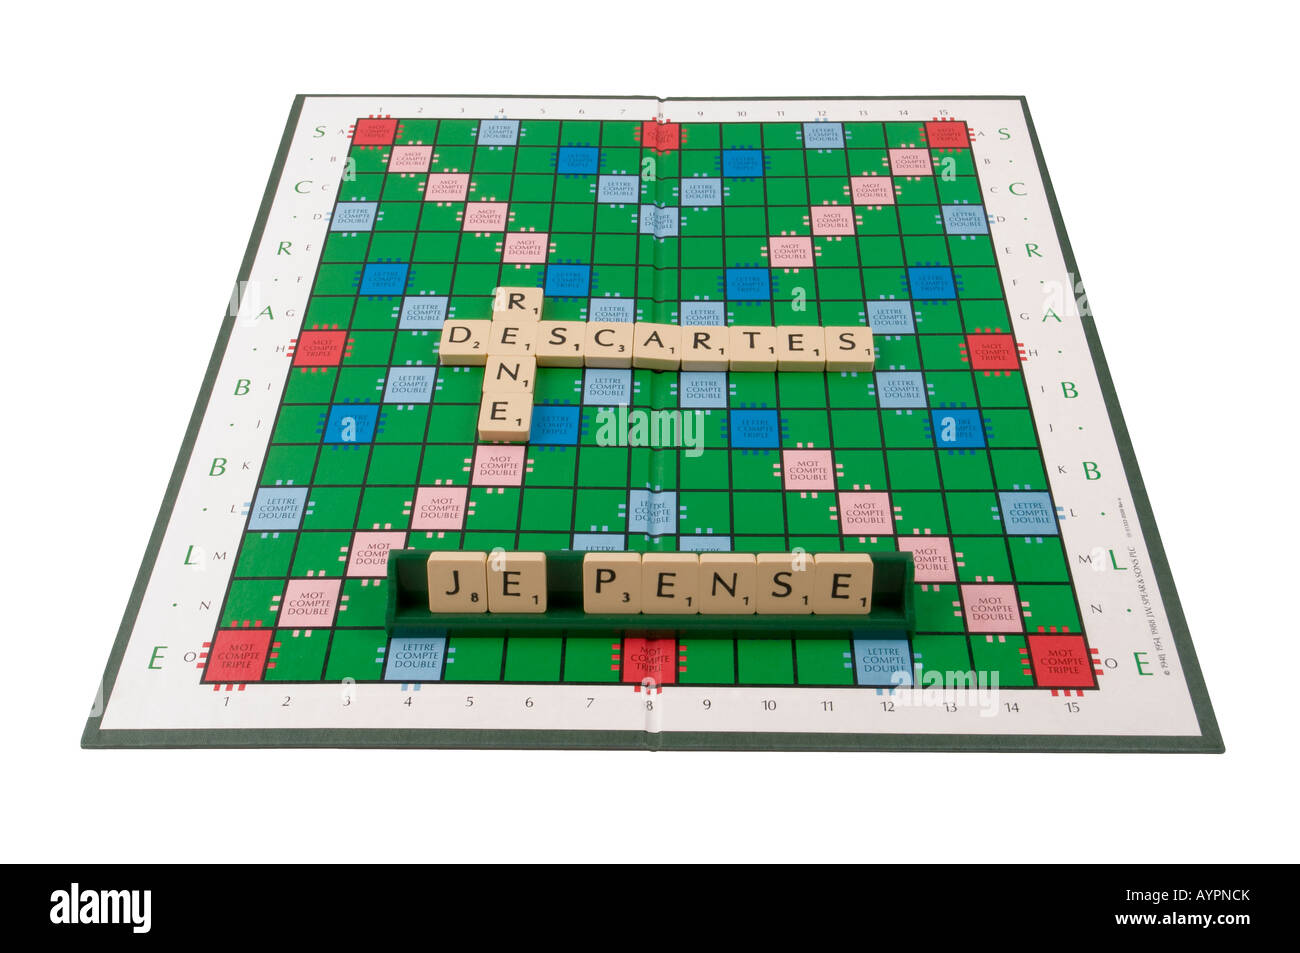 Réné Descartes - Je pense - Scrabble board. Stock Photo